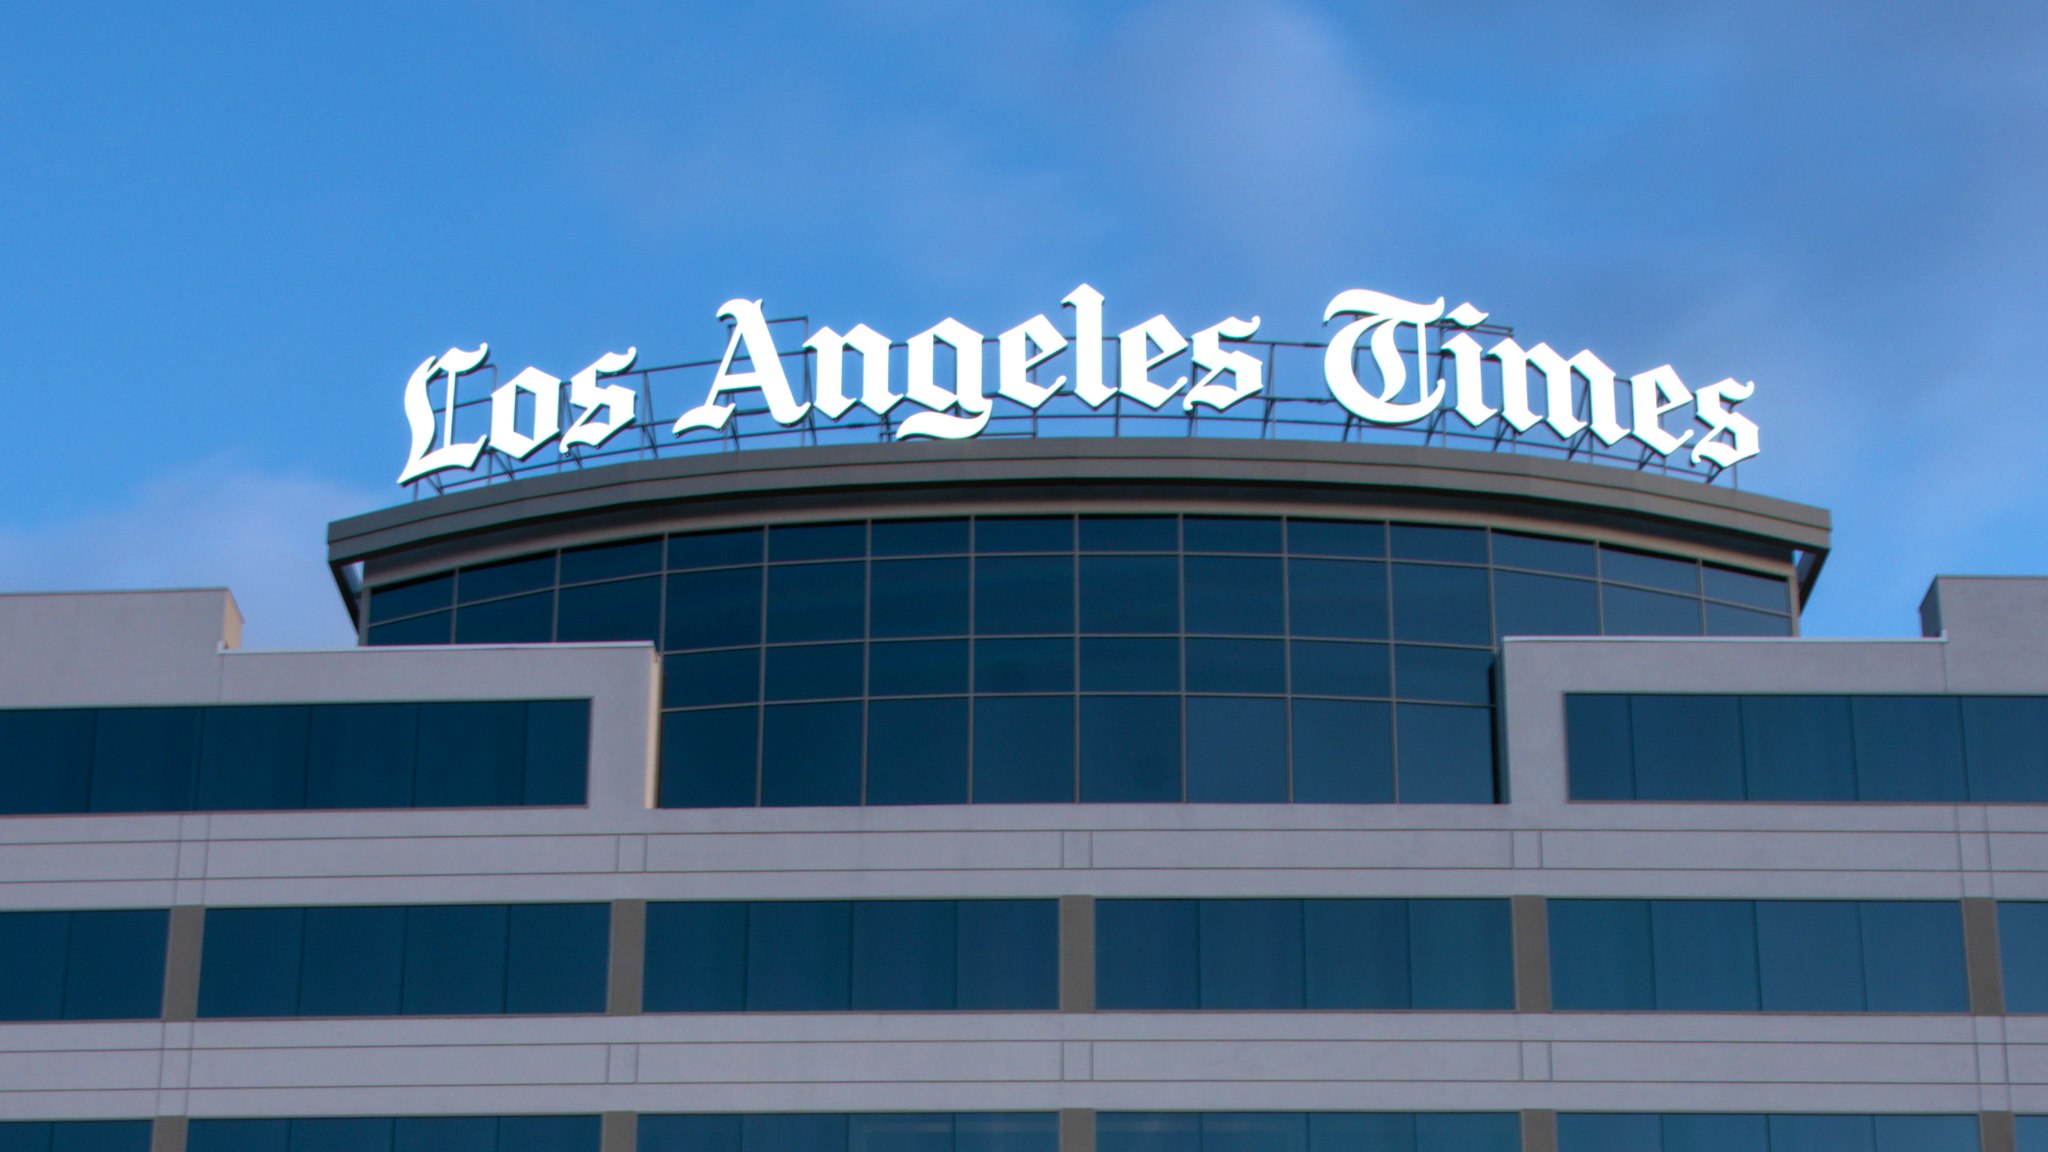 EL SEGUNDO, CA - APRIL 17: The Los Angeles Times building and newsroom along Imperial Highway on Friday, April 17, 2020 in El Segundo, CA.